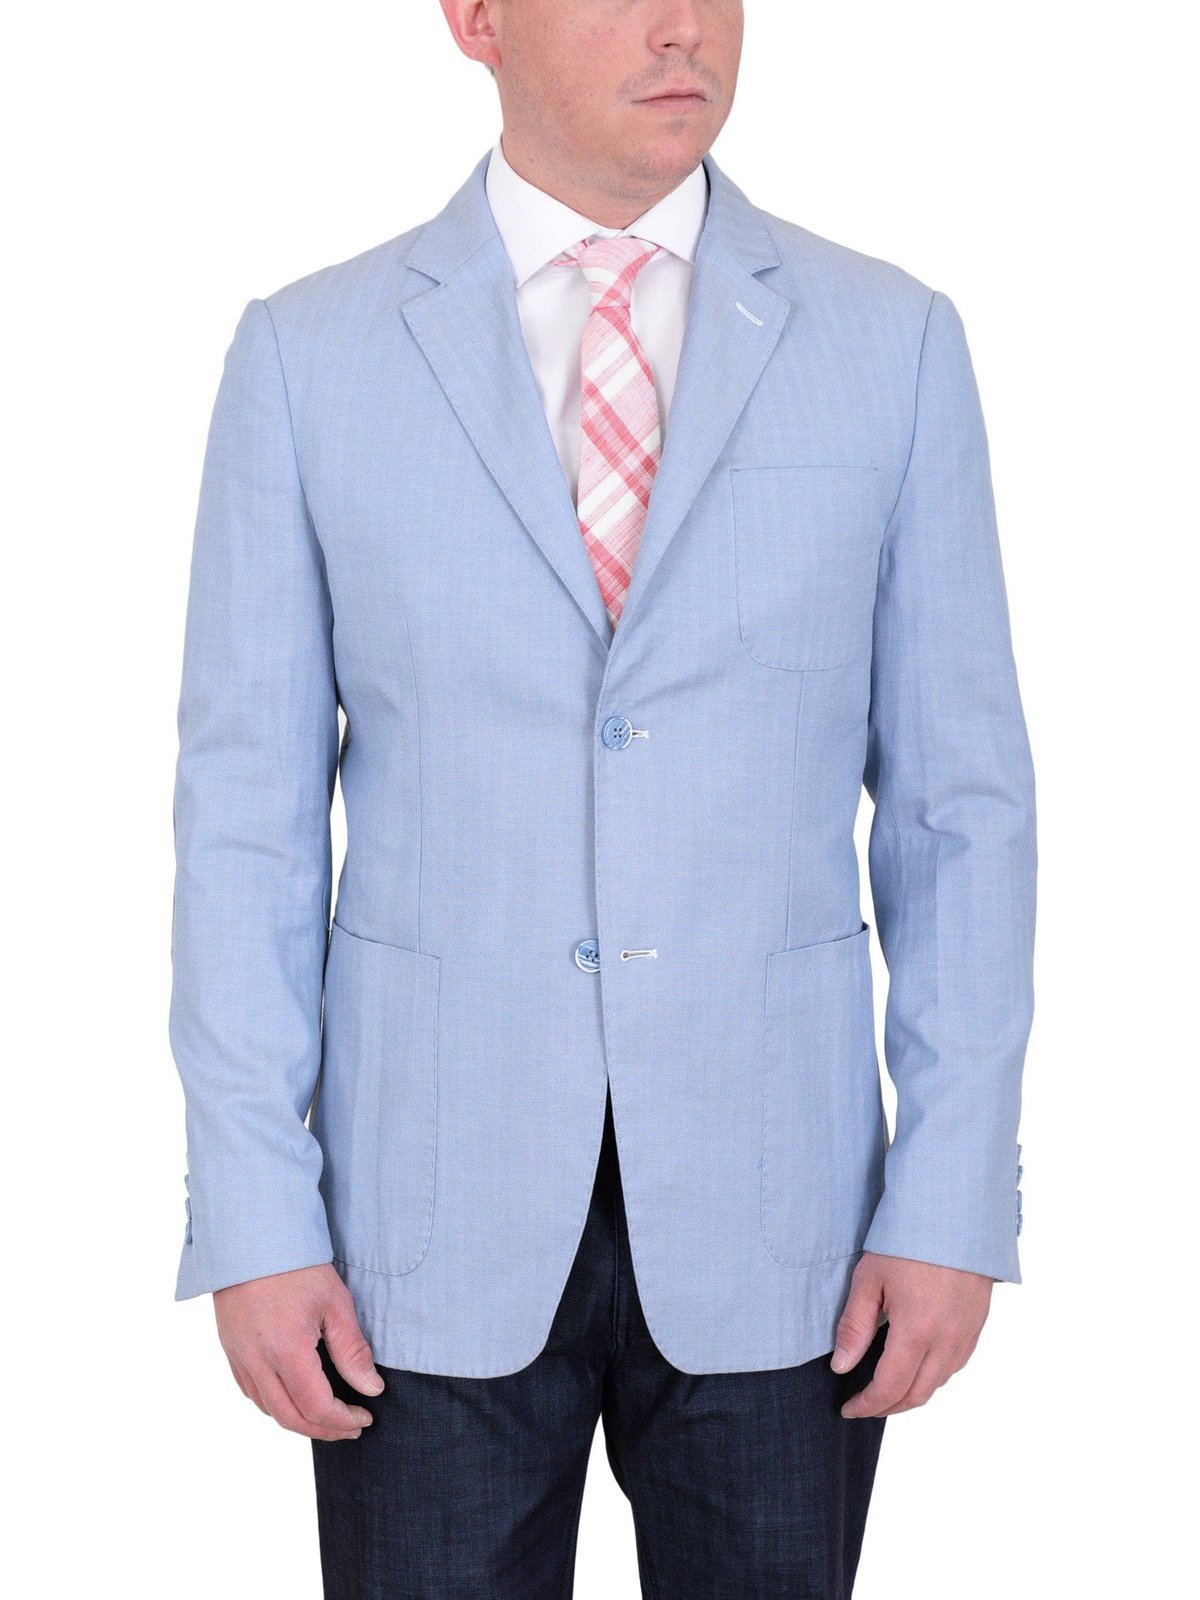 Label E BLAZERS Mens Modern Fit Sky Blue Herringbone Unstructured Cotton Field Jacket Sportcoat